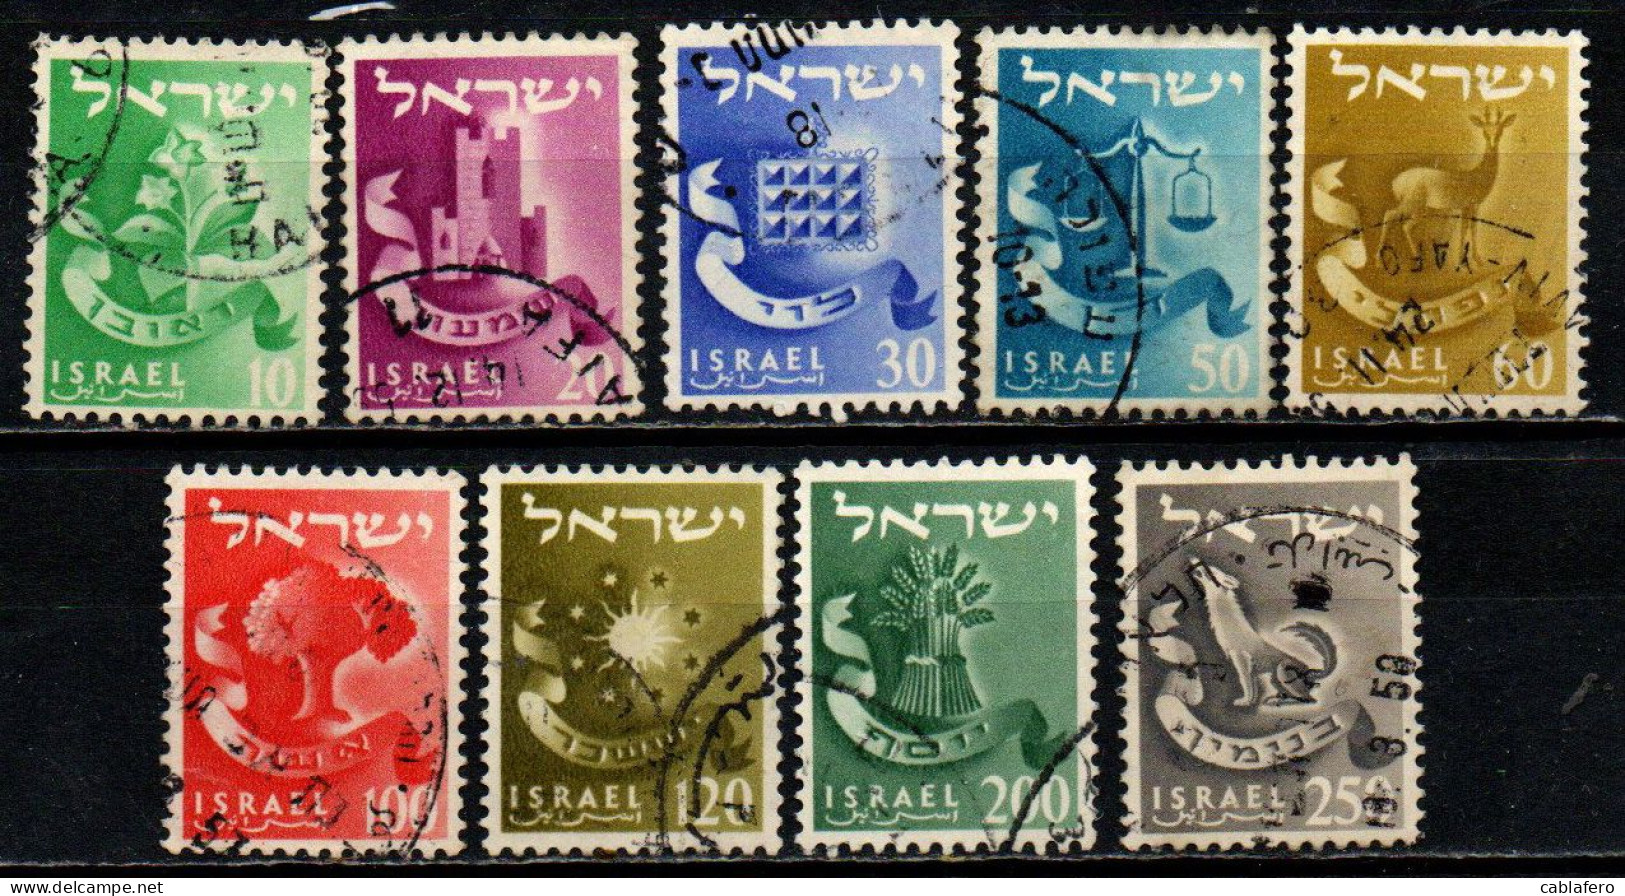 ISRAELE - 1955 - Twelve Tribes - USATI - Gebraucht (ohne Tabs)